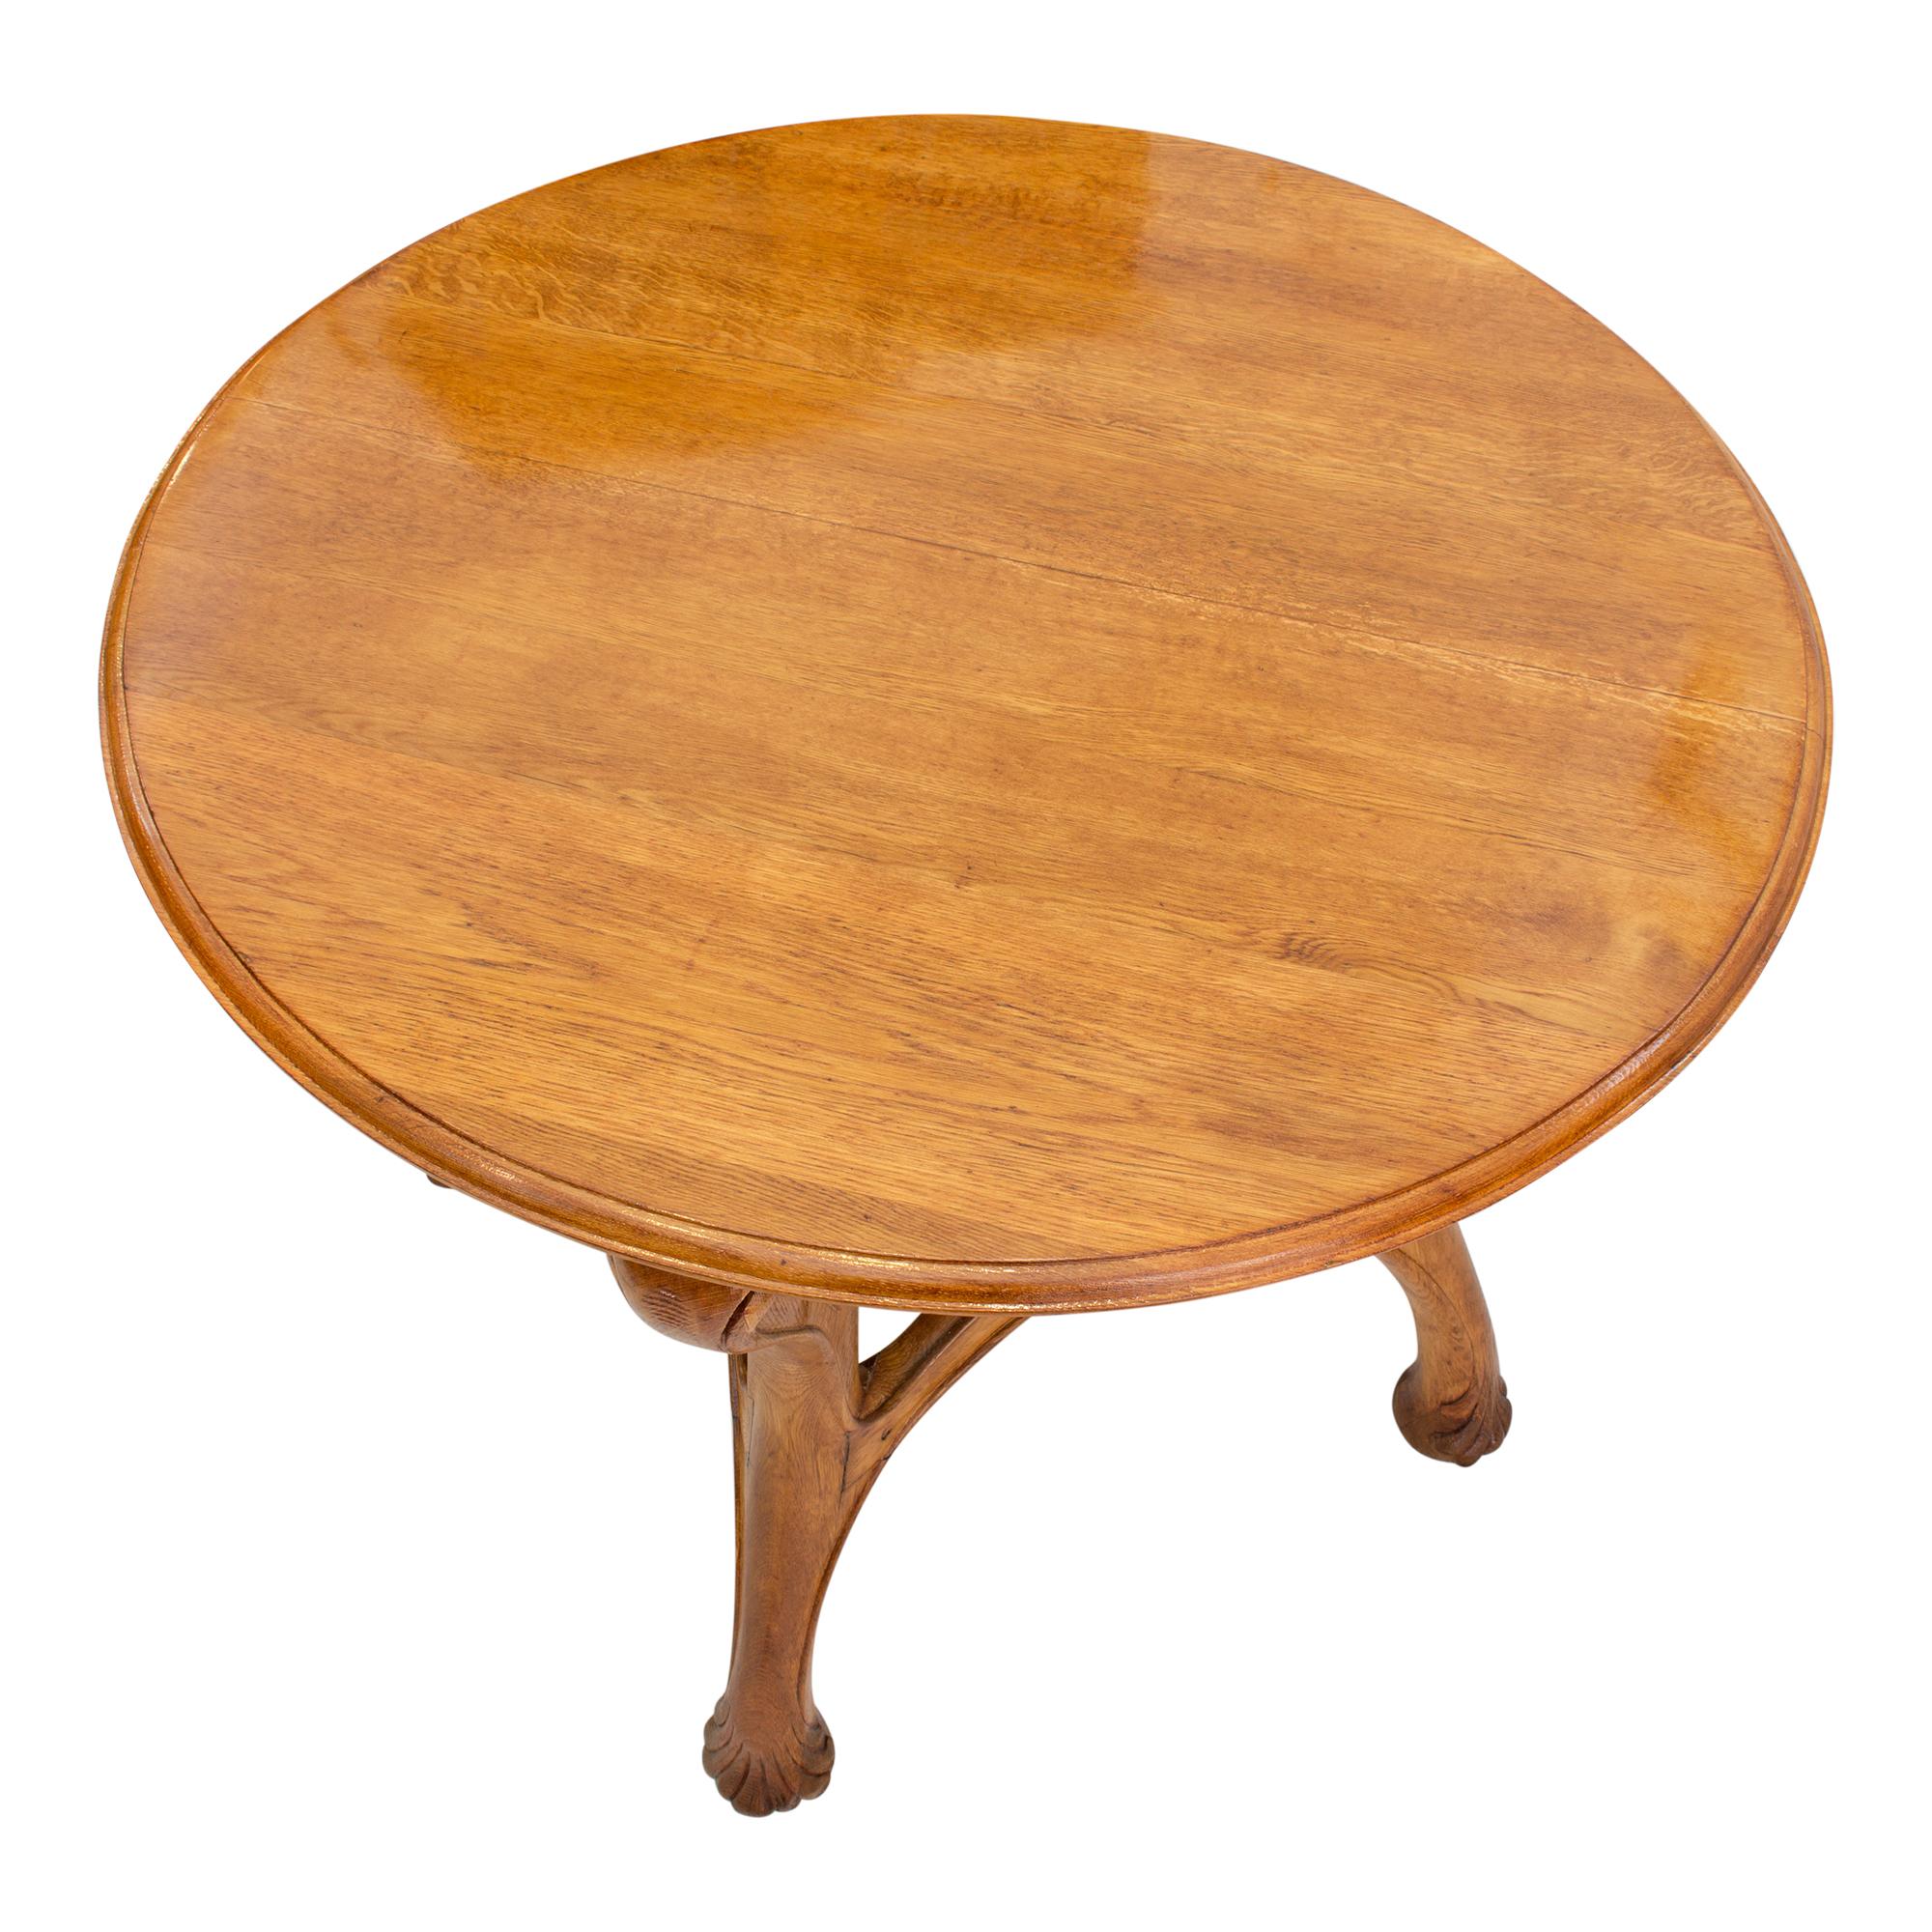 French Louis Majorelle Art Nouveau Oak Round Table